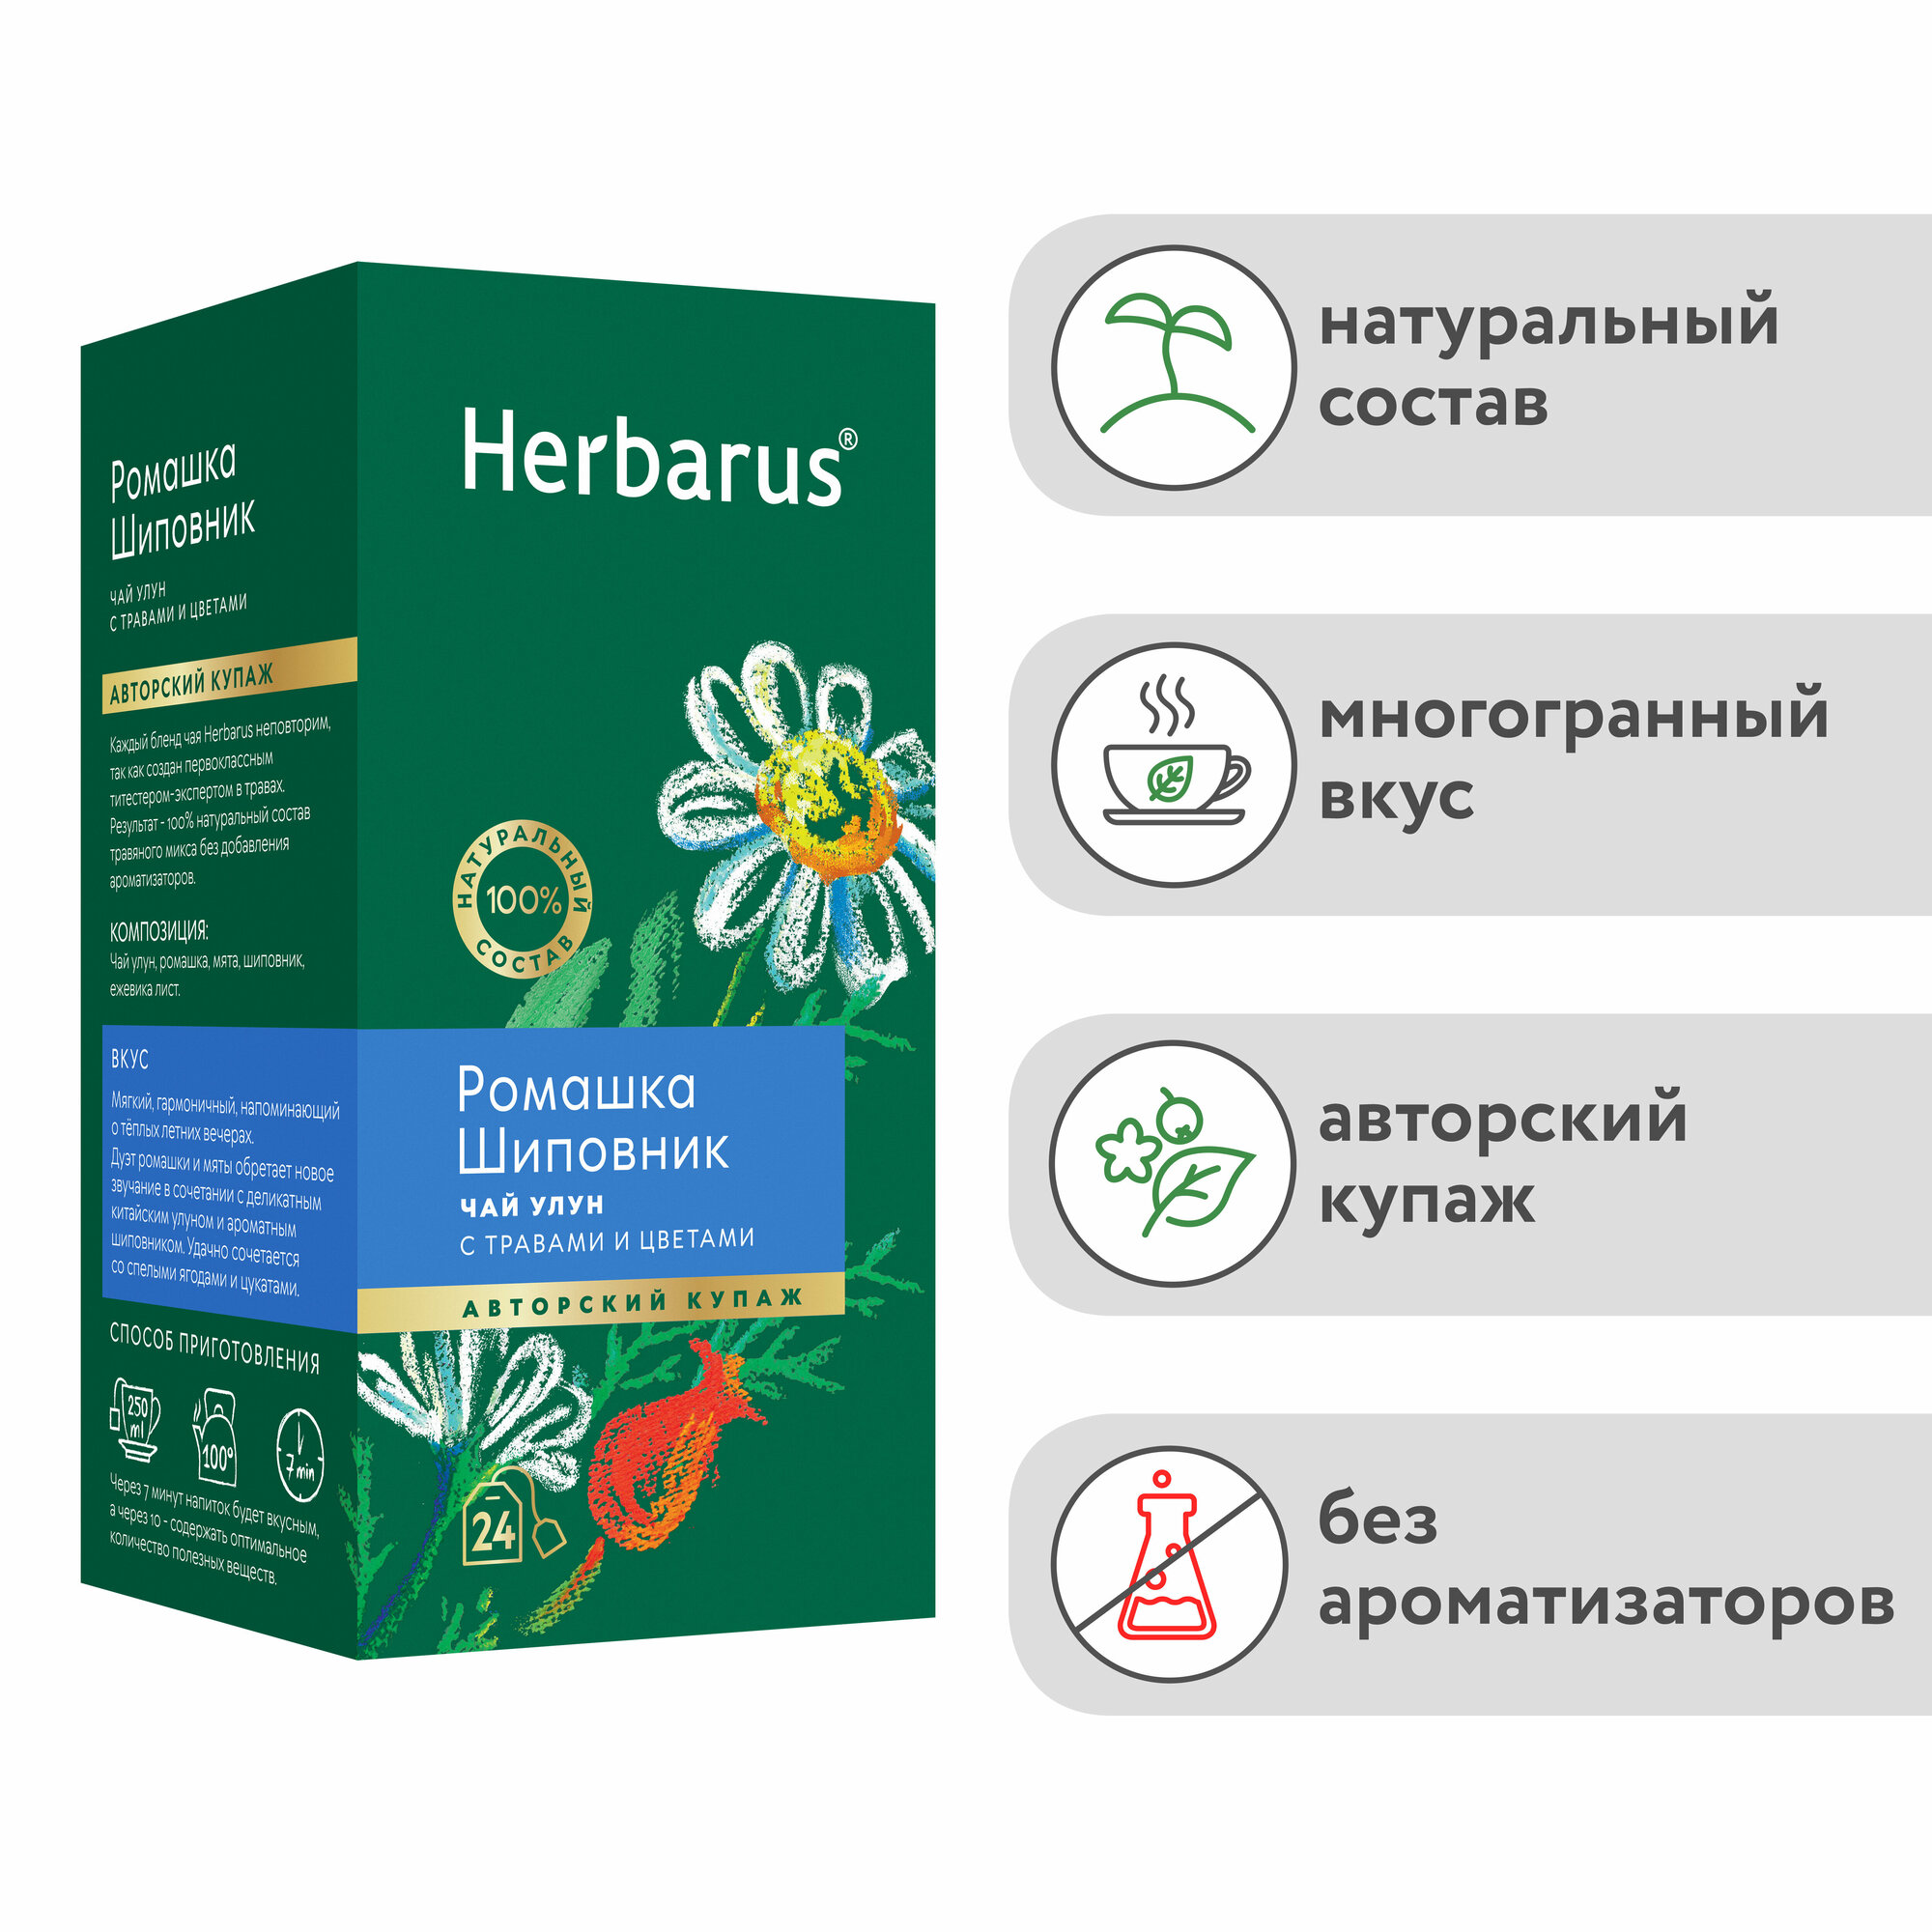 Herbarus "Ромашка Шиповник", Чай улун с добавками в пакетиках 24 шт - фотография № 6